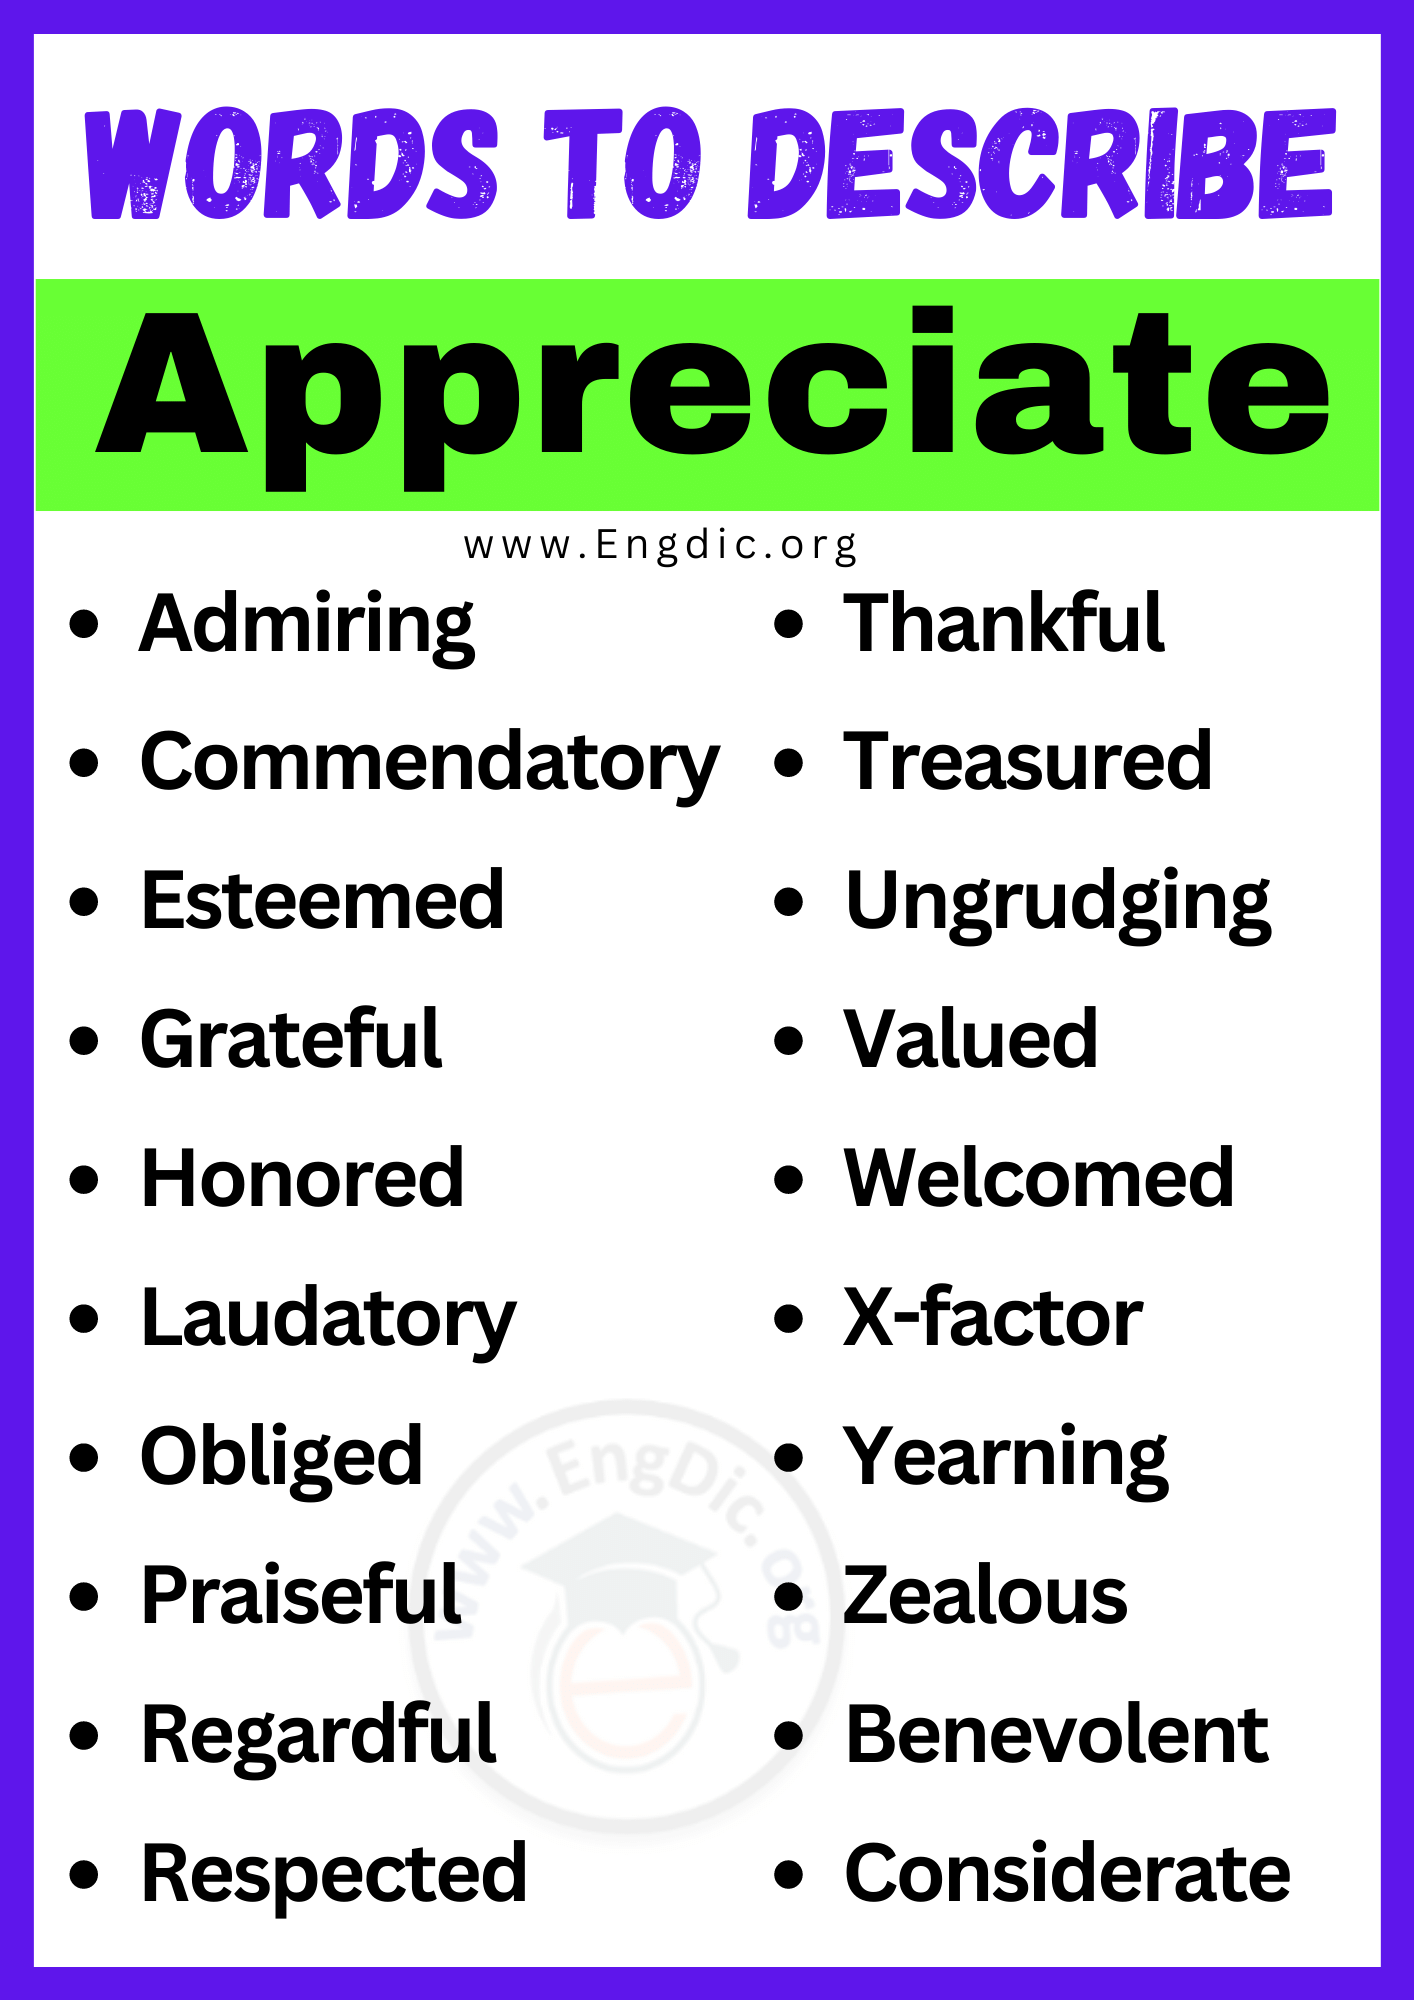 Words to Describe Appreciate